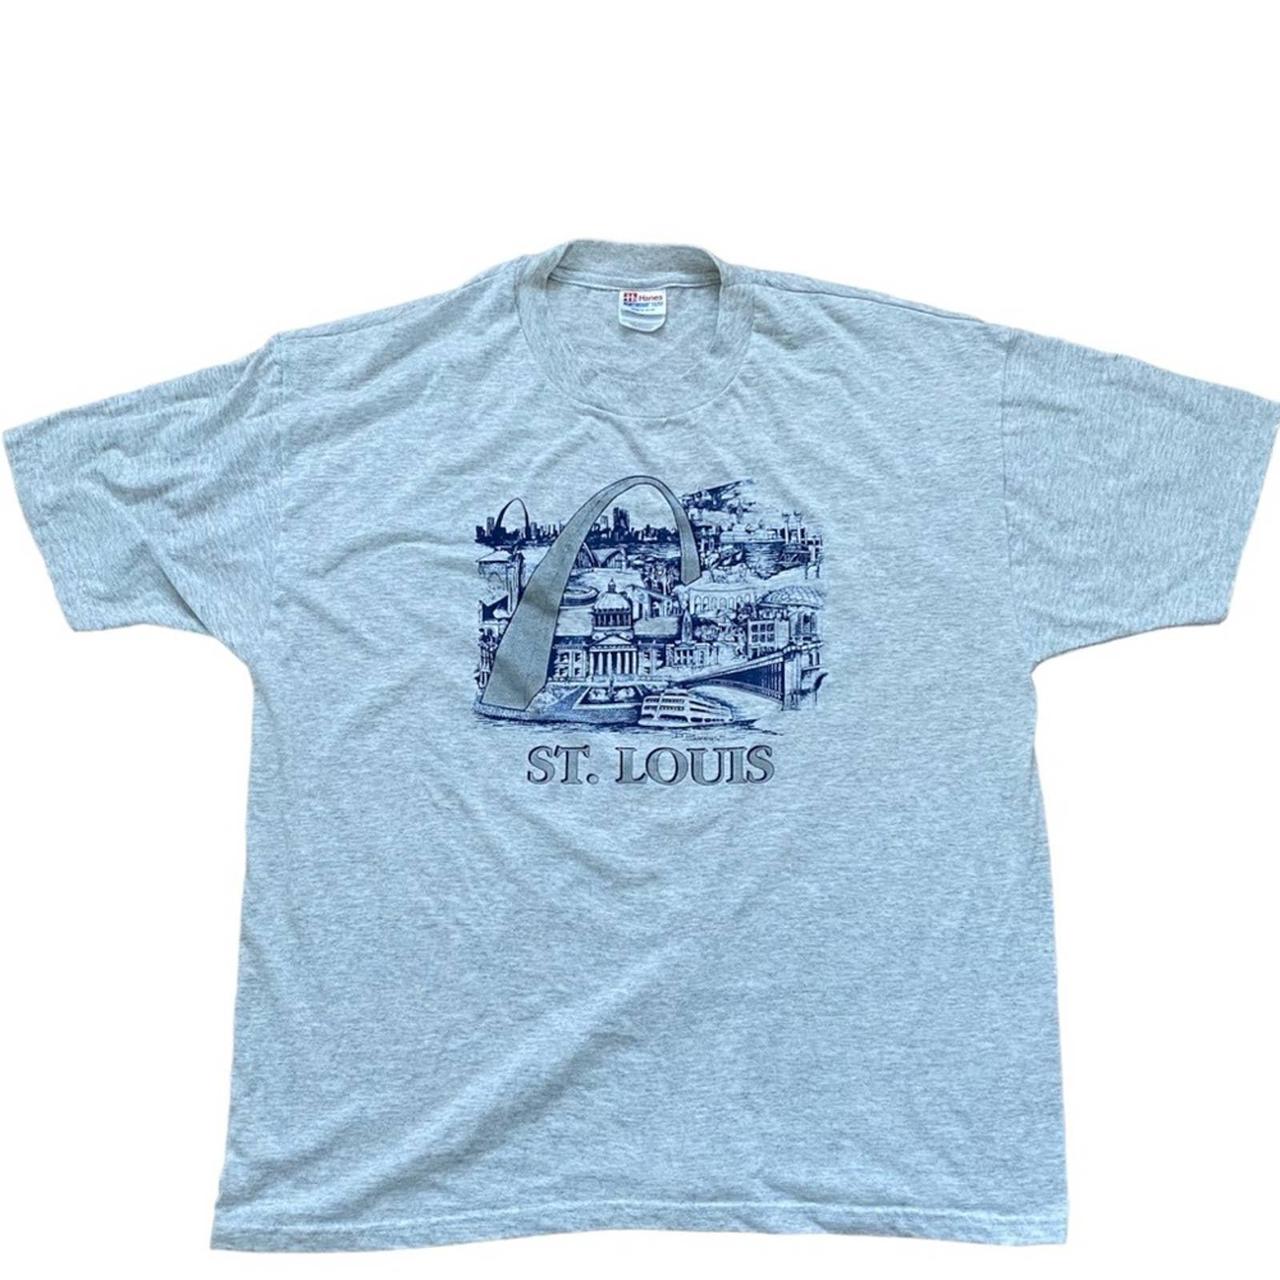 St. Louis Missouri Vintage Shirt